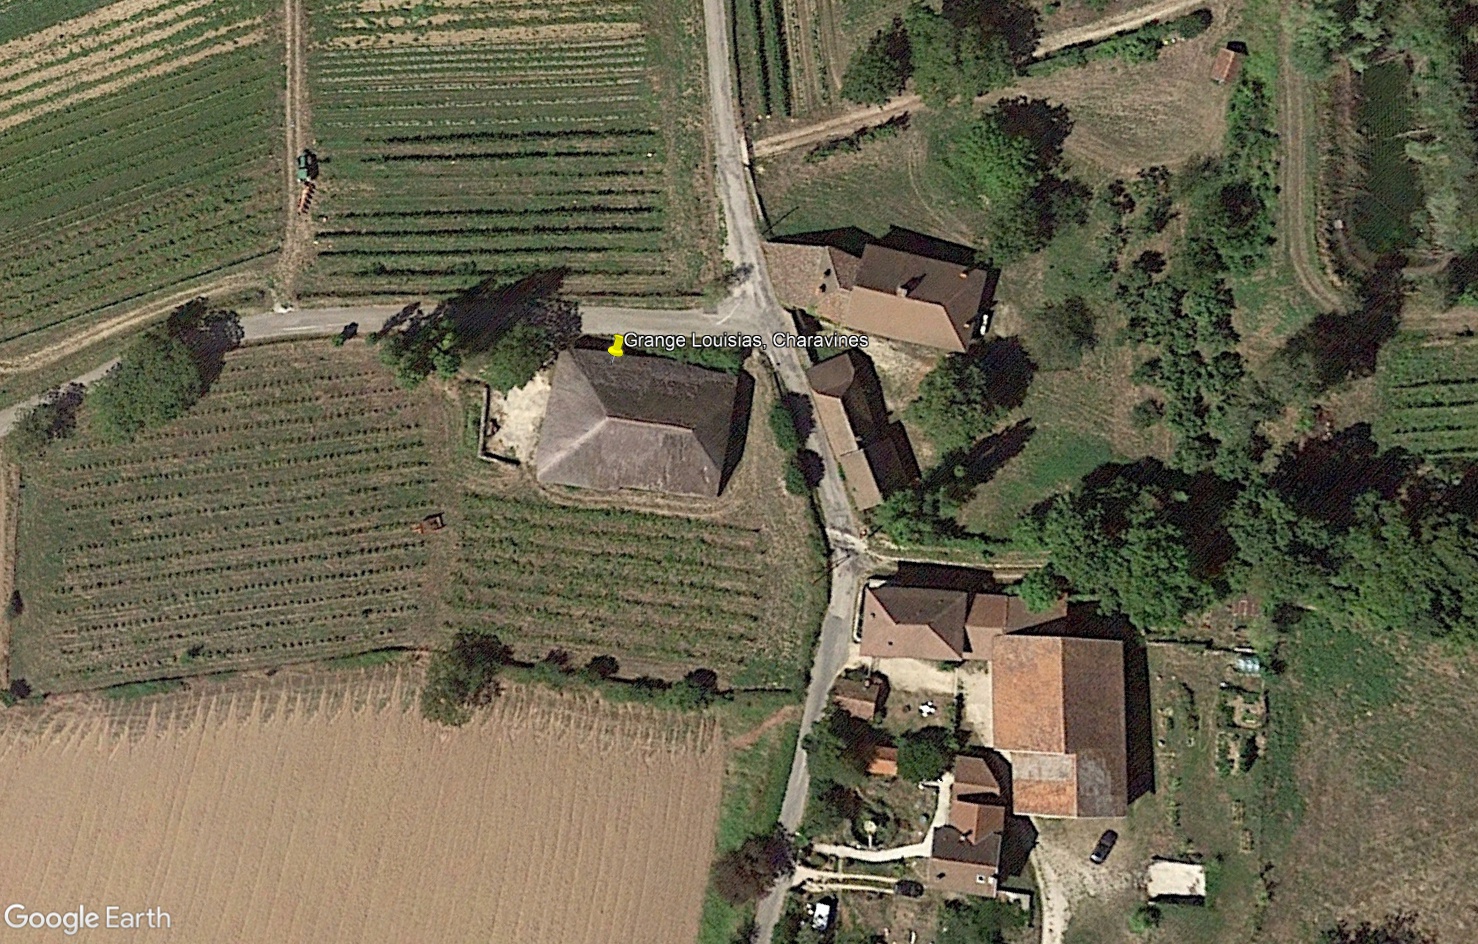 Pisé et chaume réunis : zoom sur la Grange de Louisias à Charavines (Isère) Tsge3998